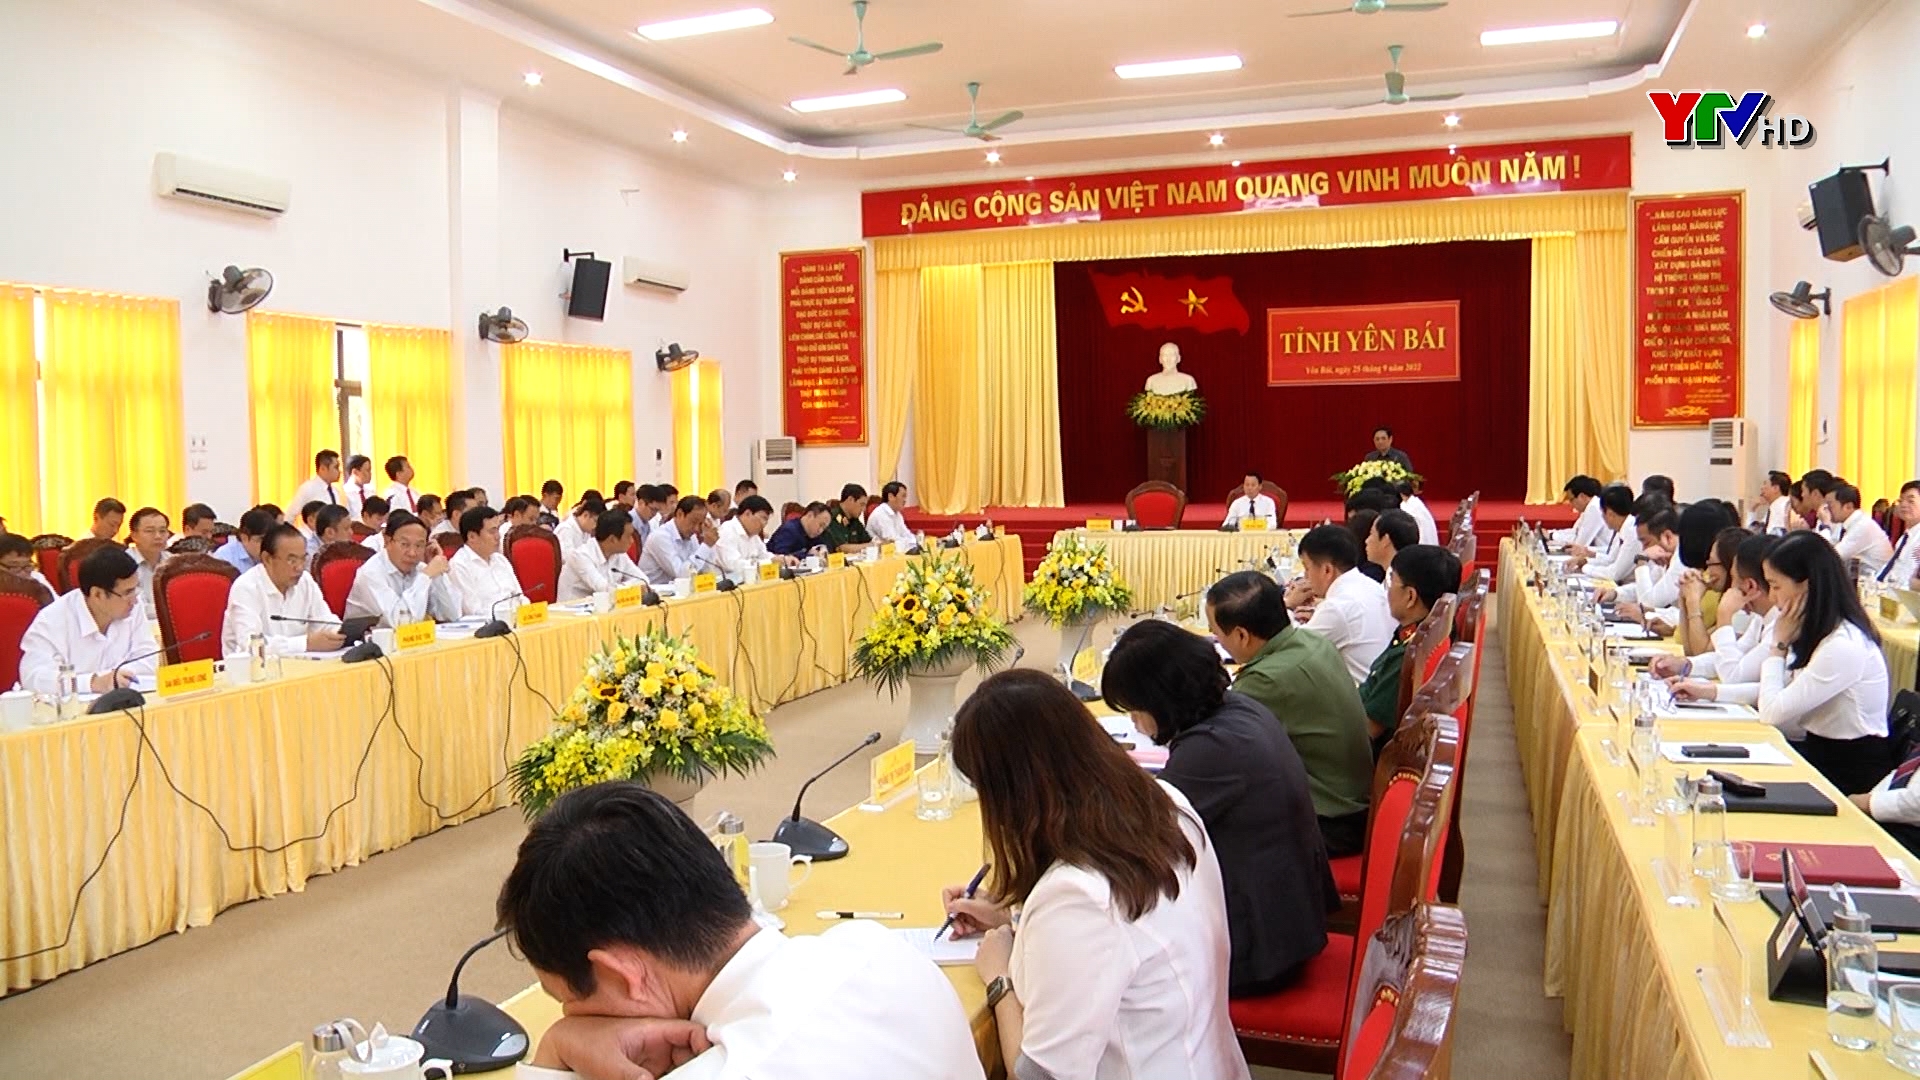 Phát biểu chỉ đạo của Thủ tướng Chính phủ Phạm Minh Chính tại buổi làm việc với Ban Chấp hành Đảng bộ tỉnh Yên Bái (Mở rộng)